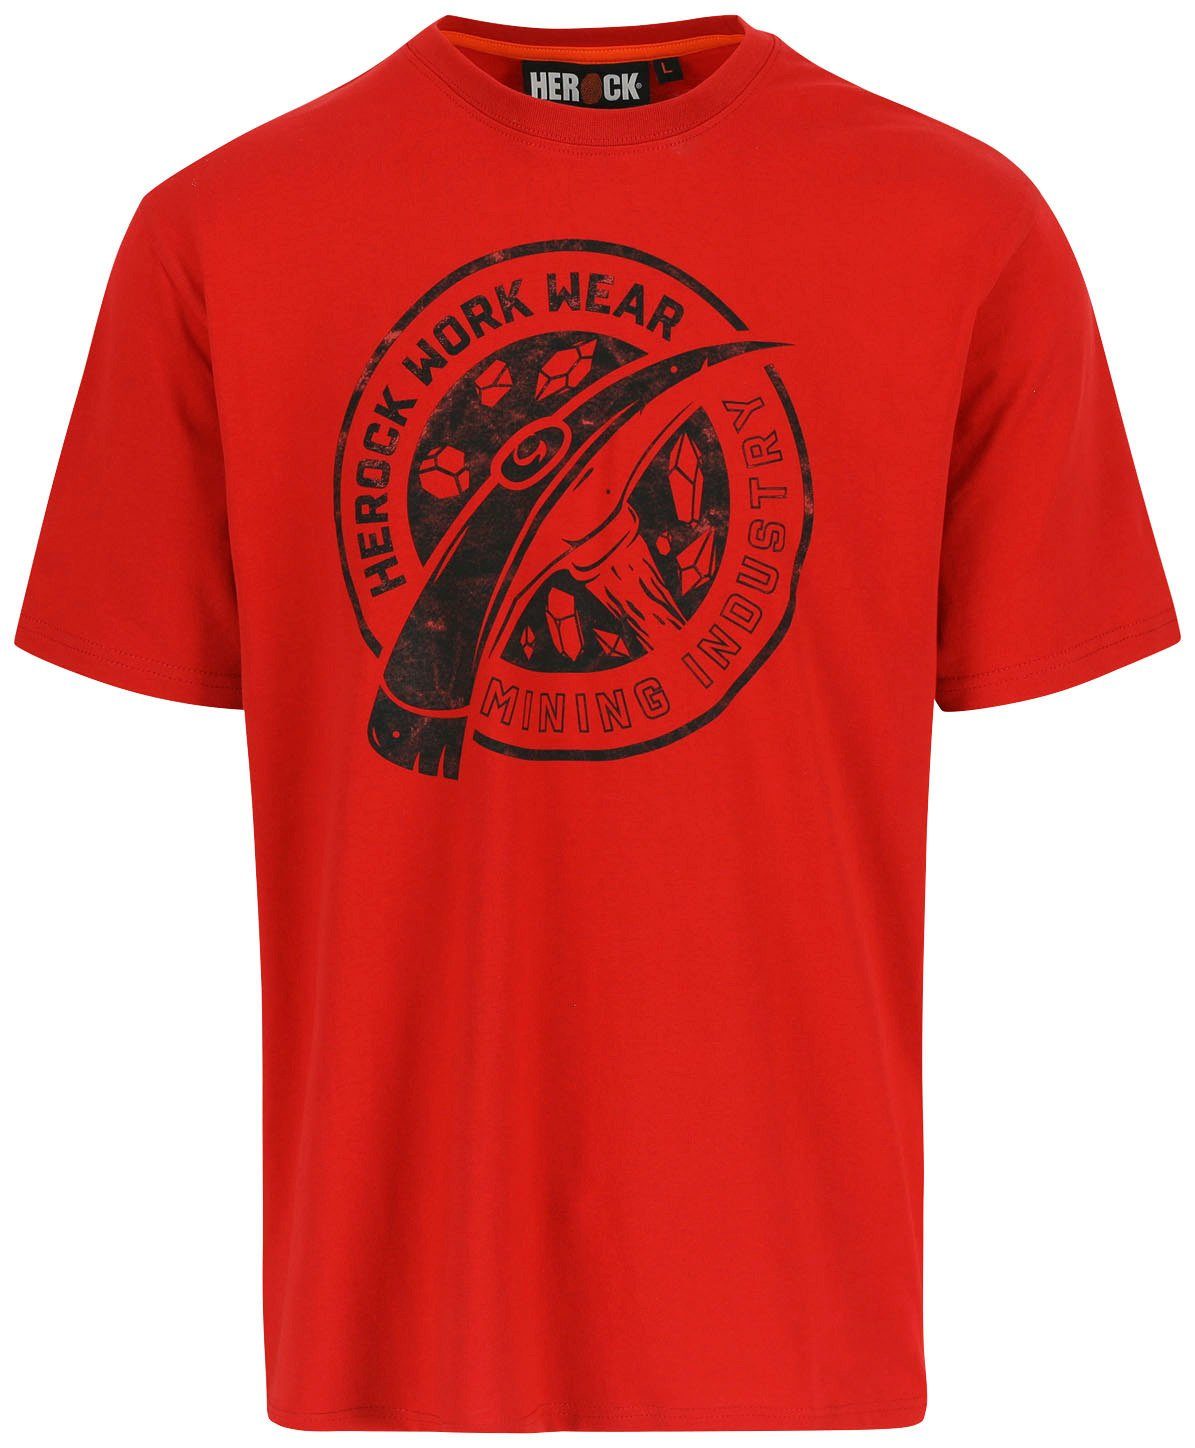 T-Shirt rot Herock verschiedene in Farben Worker erhältlich Edition, Limited